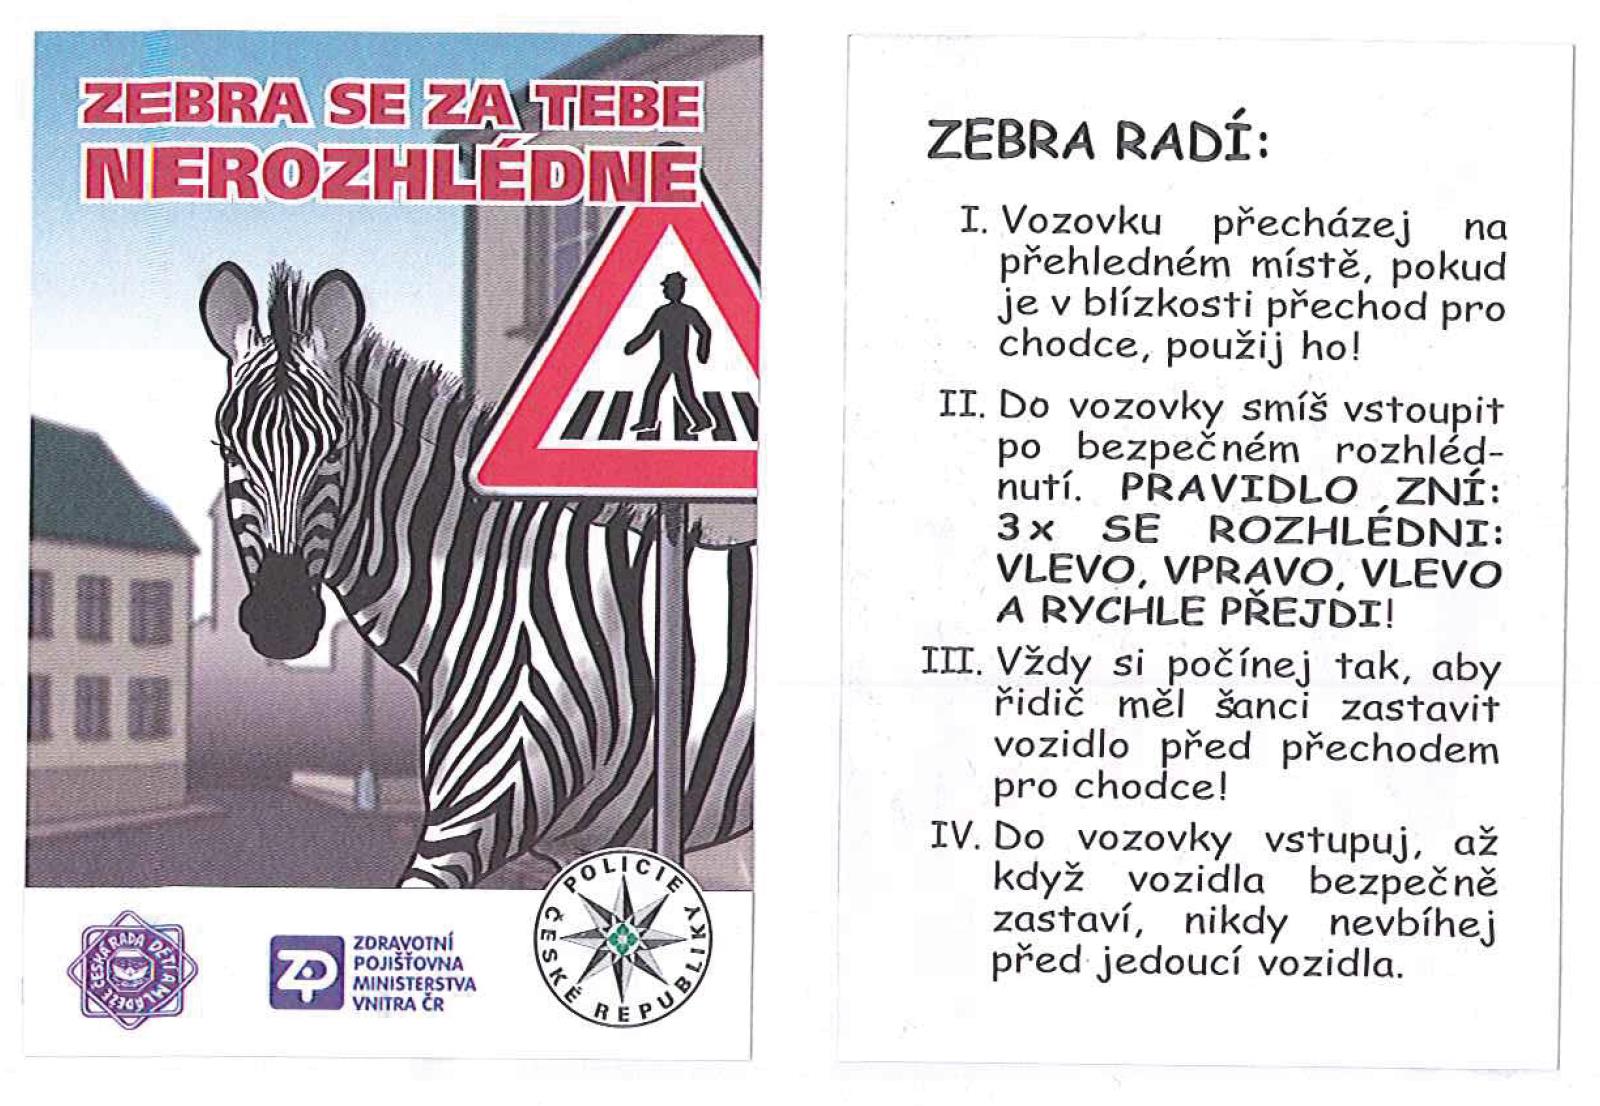 Zebra se za Tebe nerozhlédne!